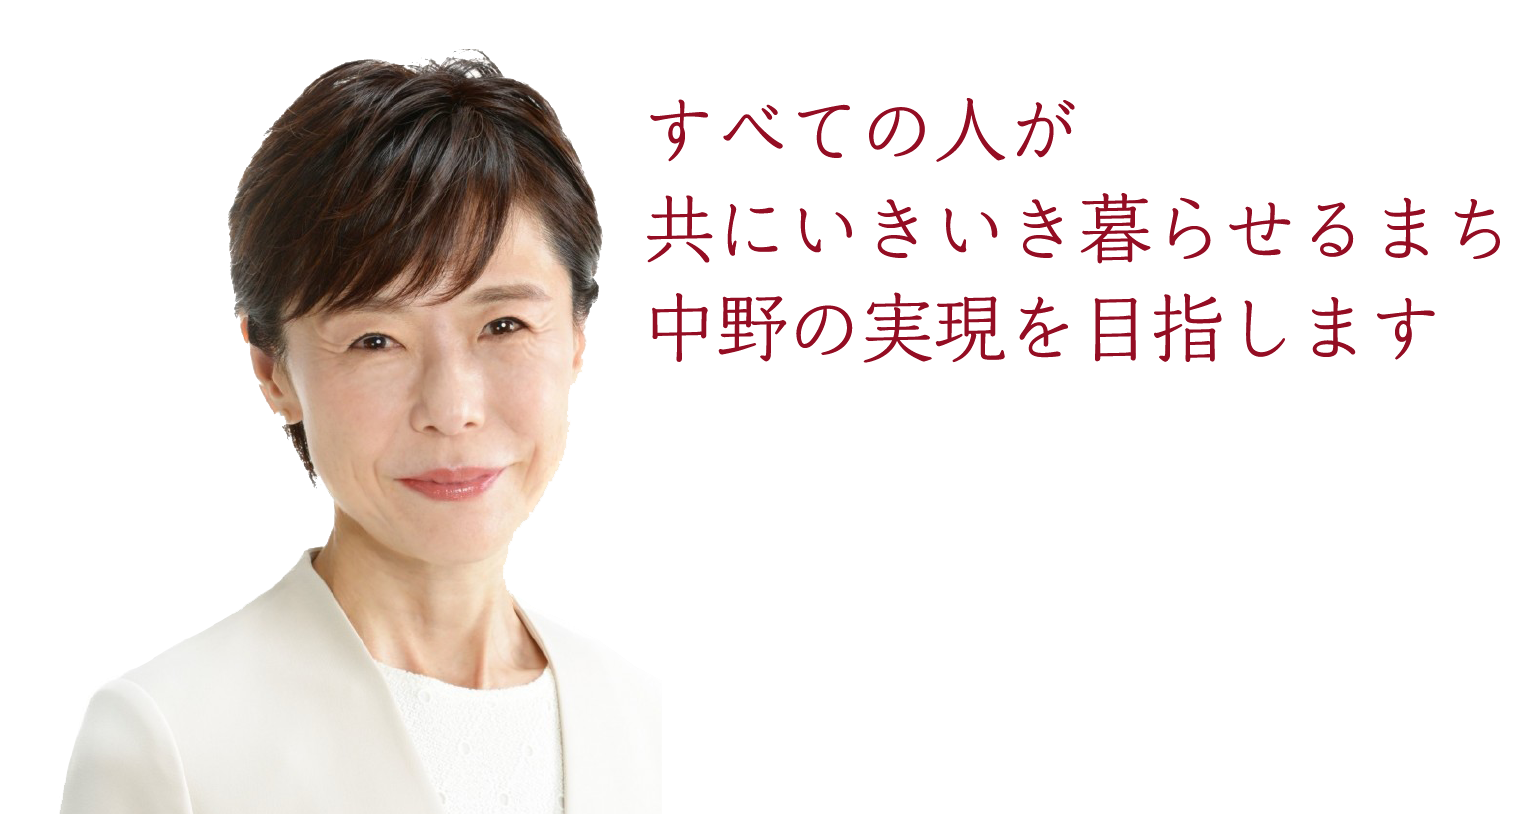 中野区議会議員 斉藤ゆり事務所 すべての人が共にいきいき暮らせるまち中野の実現を目指します